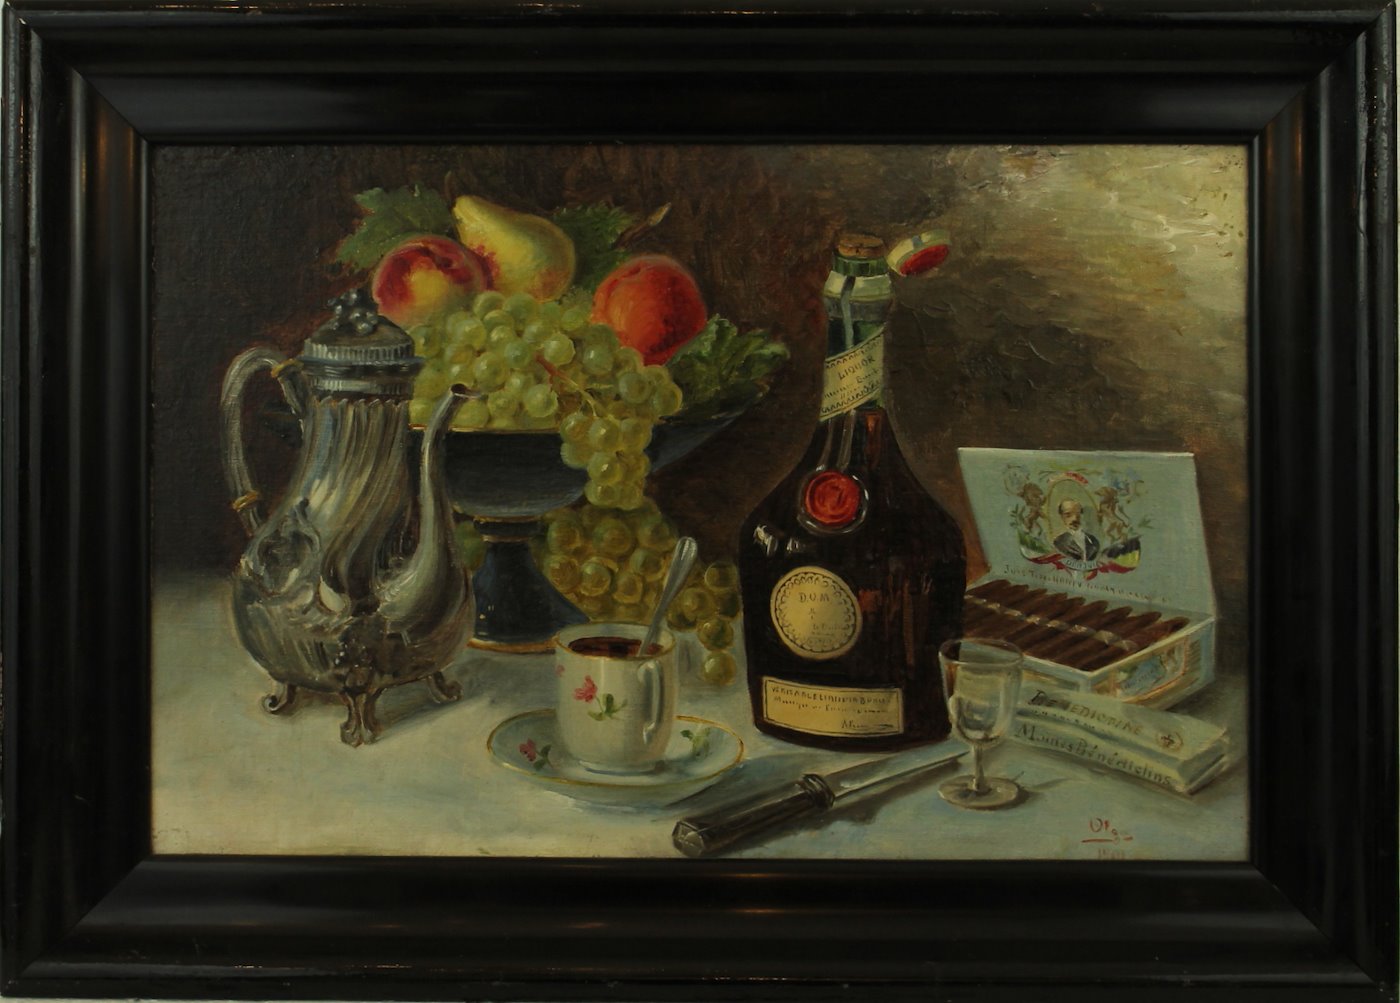 Olga - Zátiší s ovocem, lahví likéru a doutníky